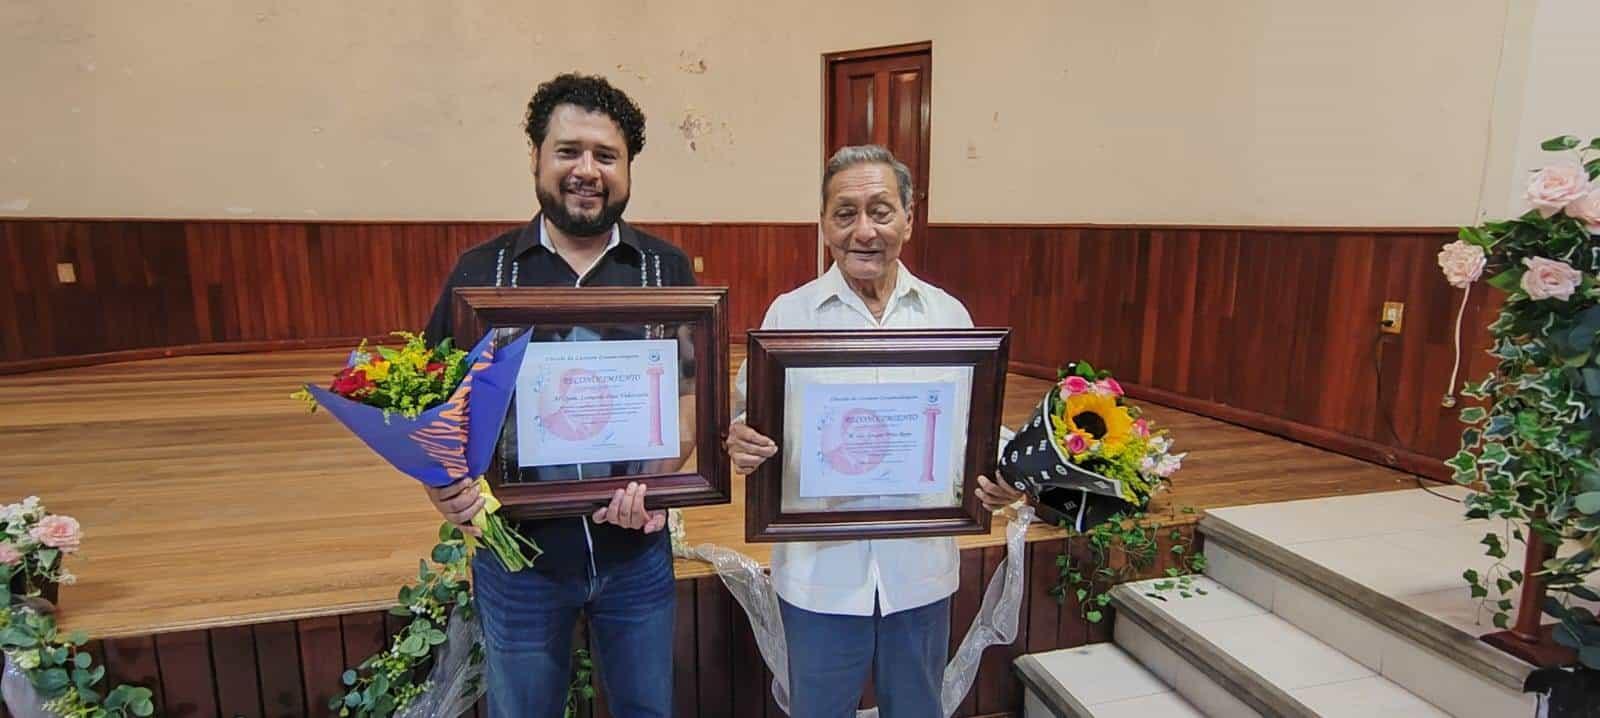 Entregan reconocimientos a Gaspar Frías Rayo y Leonardo Díaz Valenzuela en Cosamaloapan